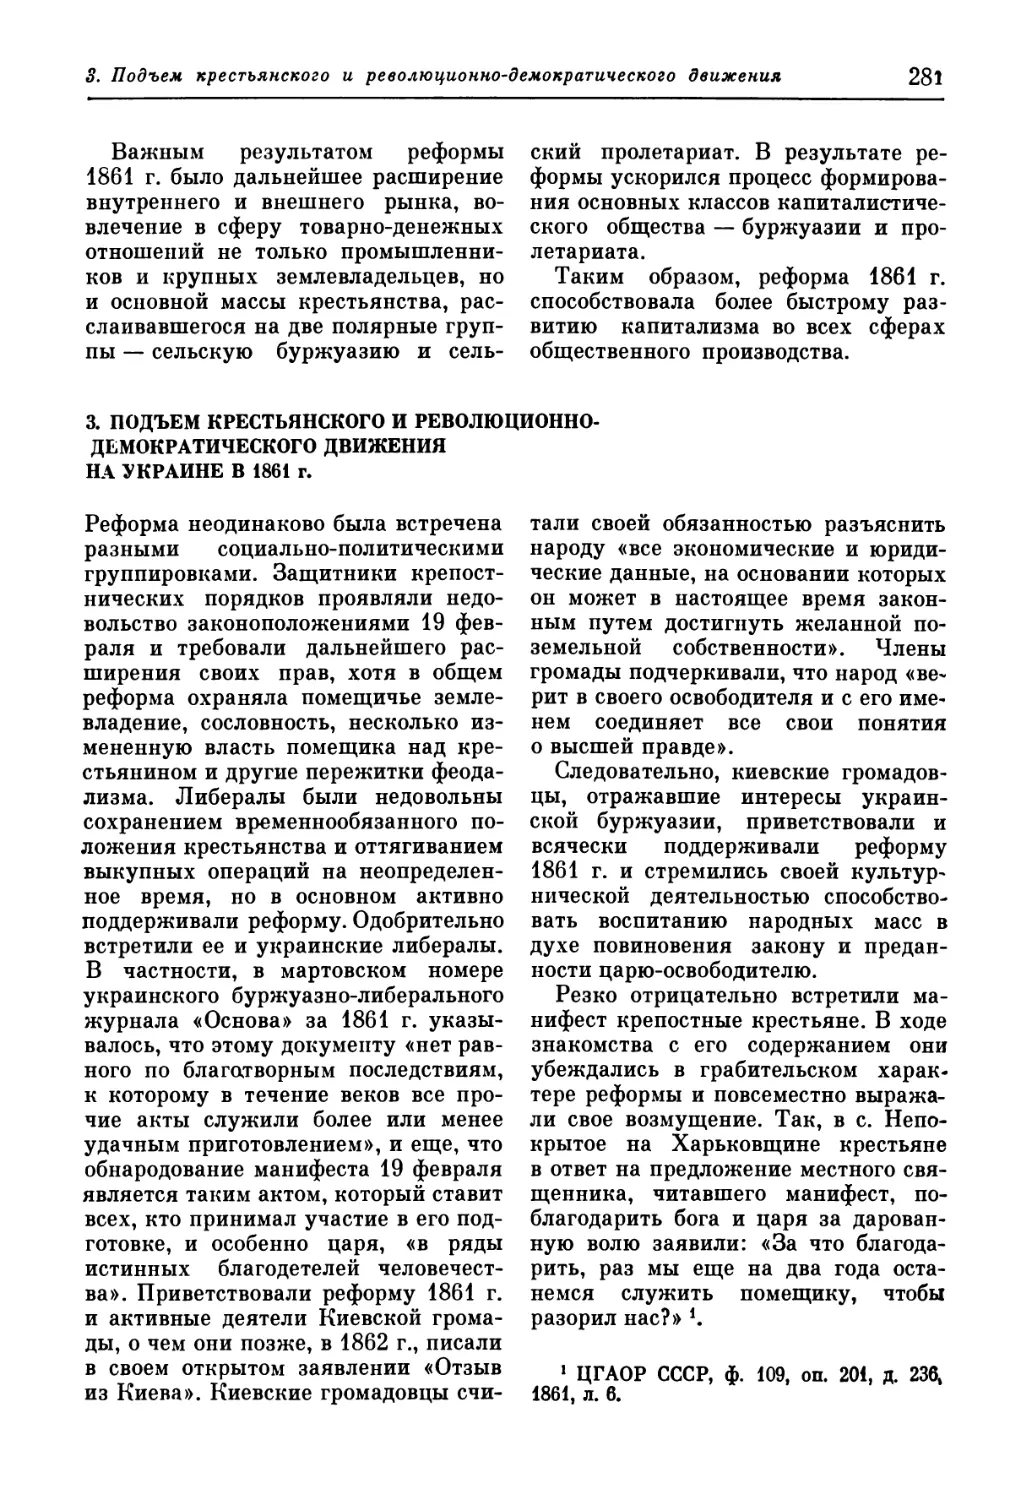 3. Подъем крестьянского и революционно-демократического движения на Украине в 1861 г